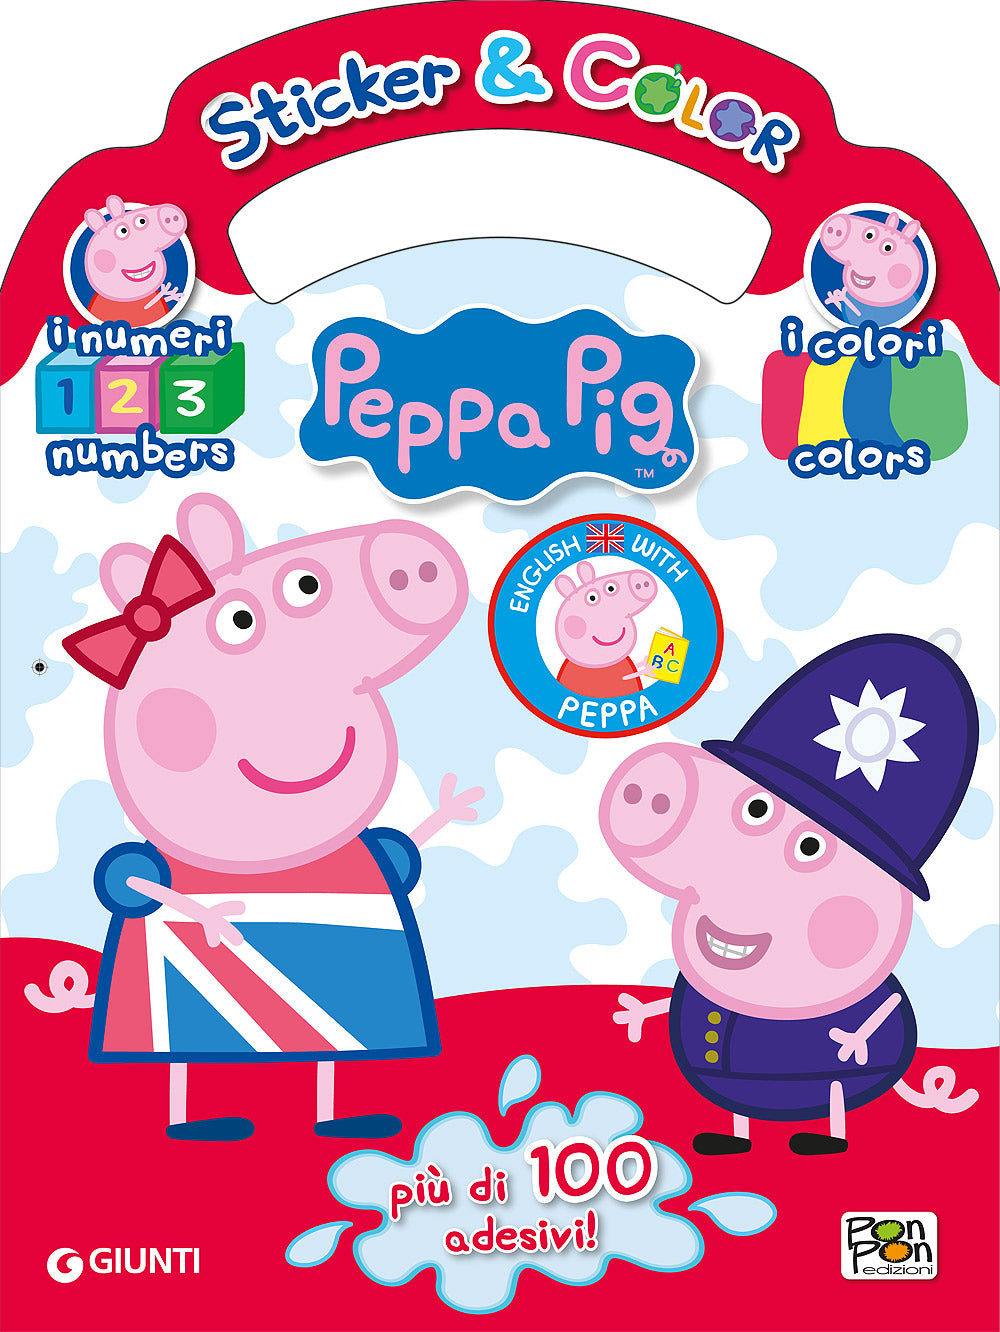 Sticker & Color Impara l'inglese con Peppa Pig - I numeri I colori. Più di 100 adesivi!